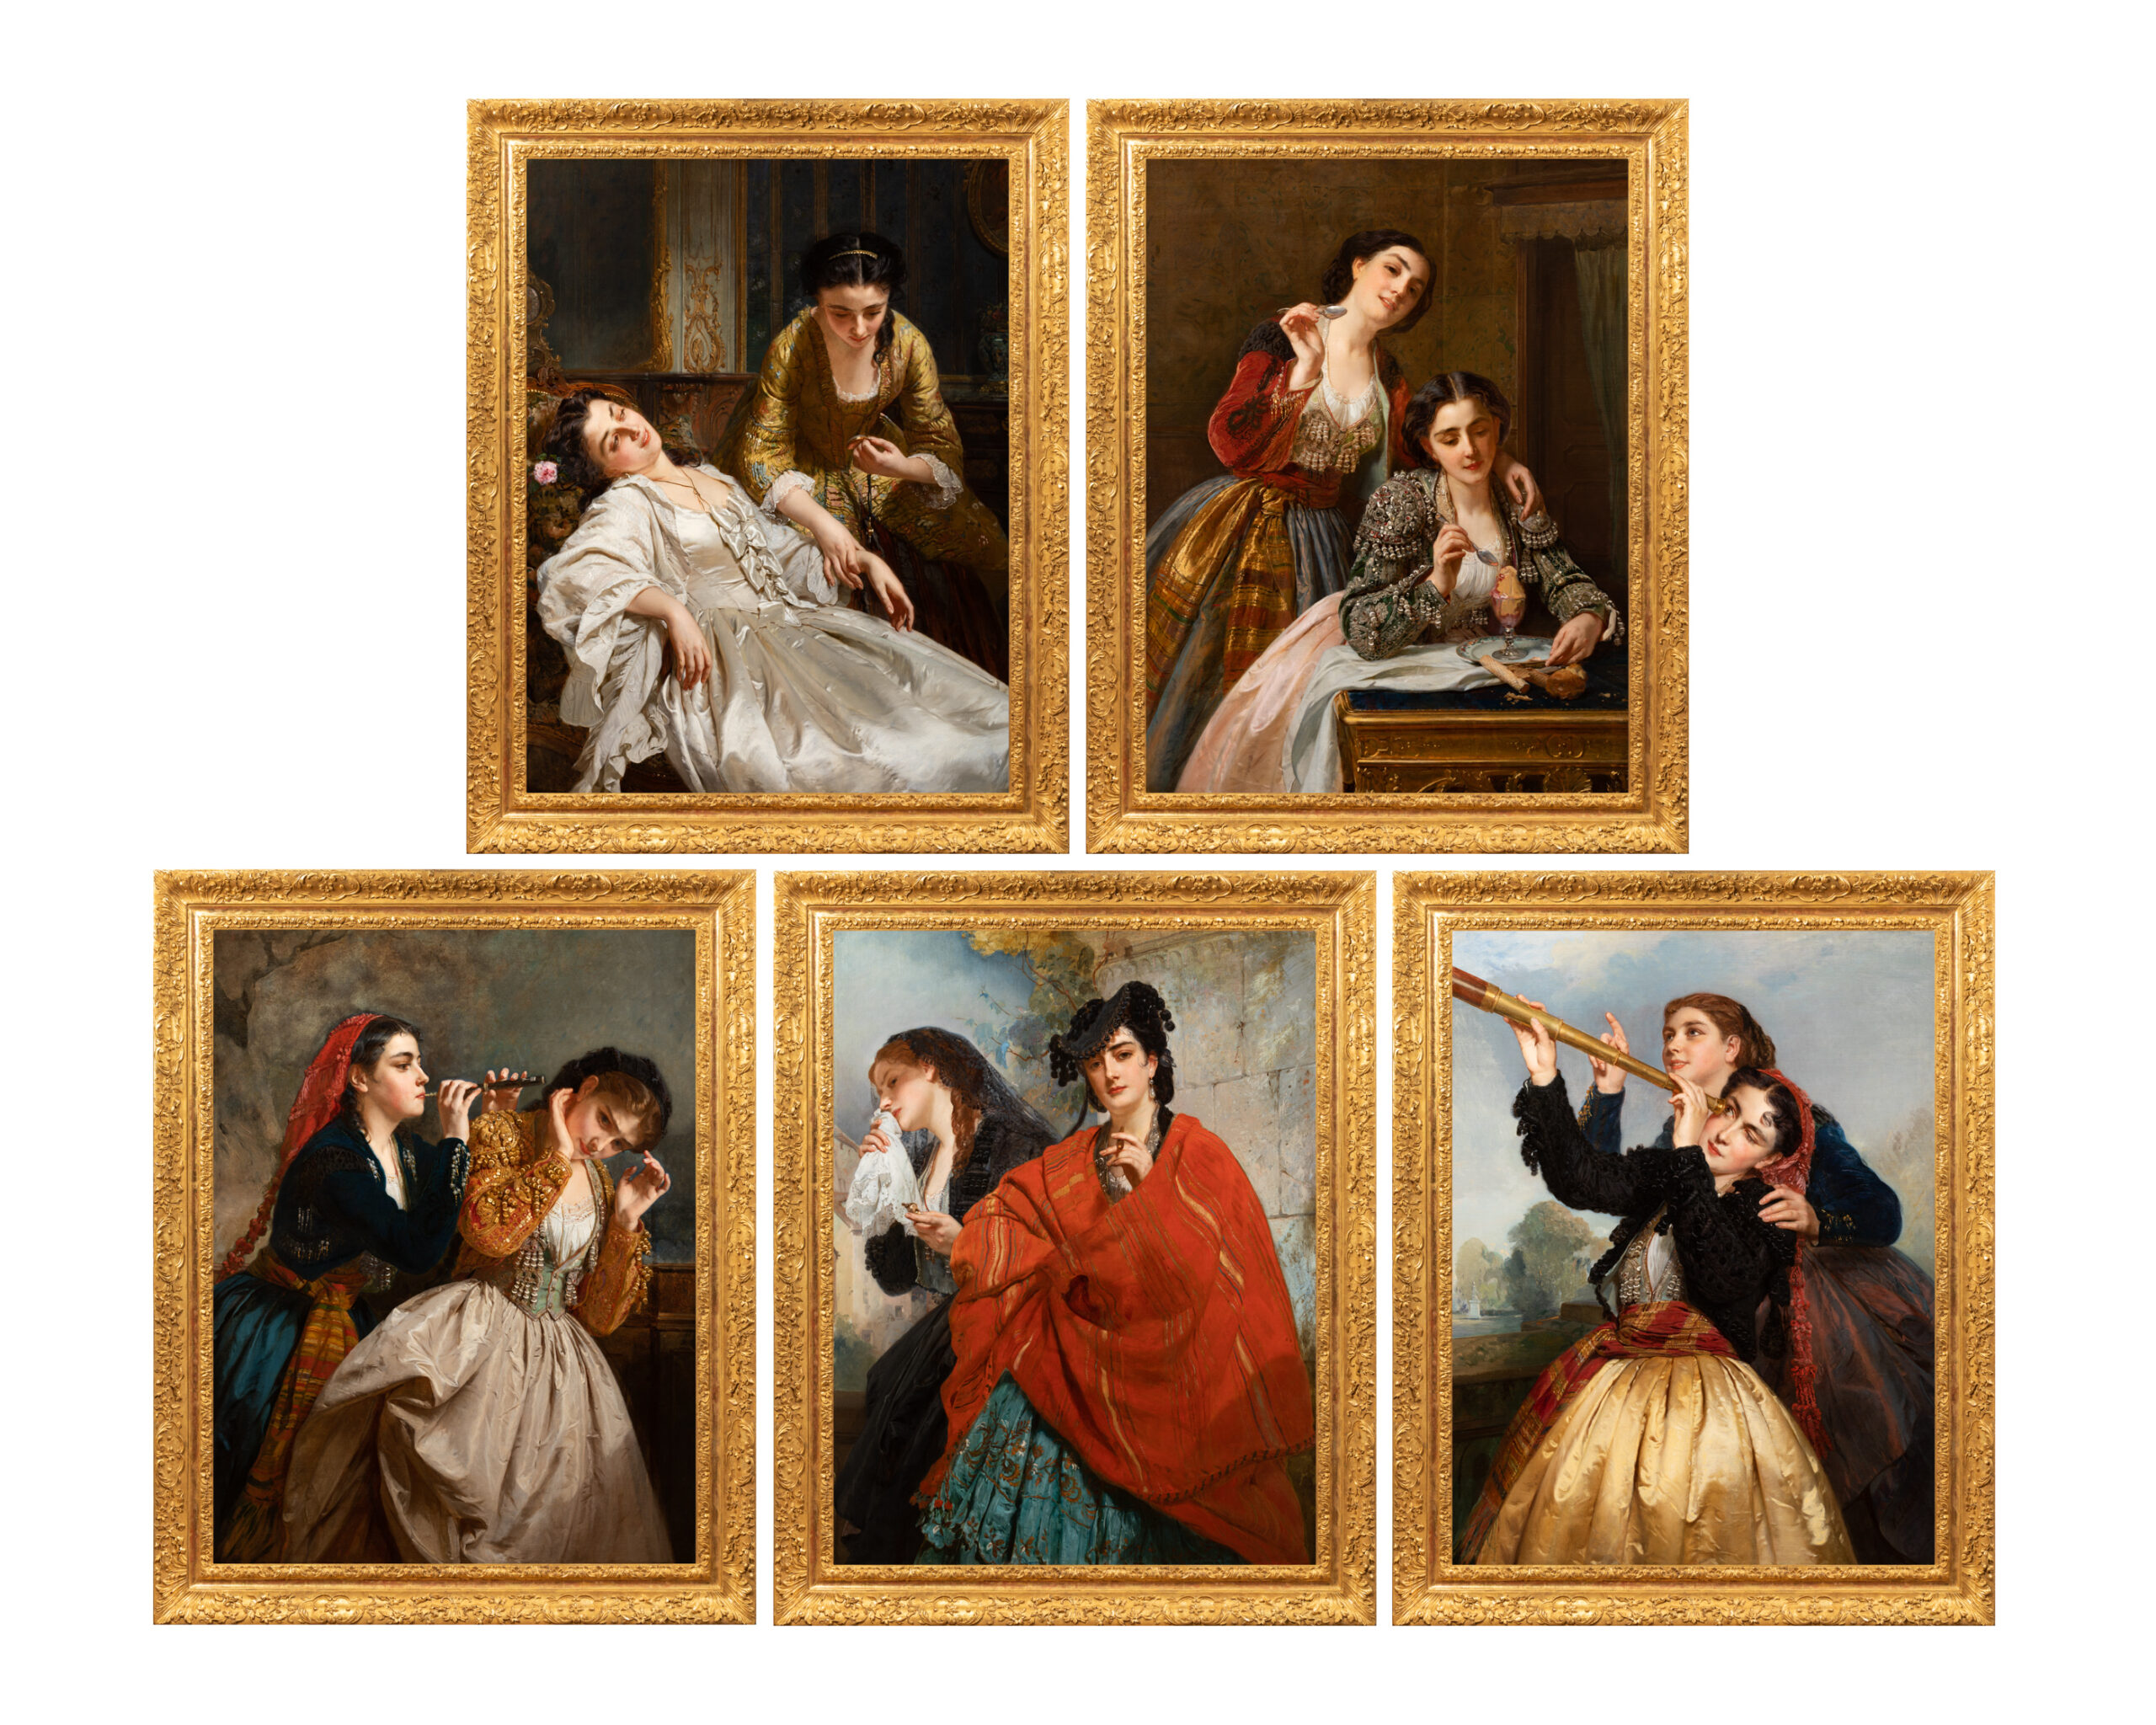 Henri-Guillaume Schlesinger (1814-1893), Les Cinq Sens, Salon des Beaux-Arts (1865), Exposition universelle (1867), huile sur toile, 115 x 89,5 cm, coll. part., © Inu studio